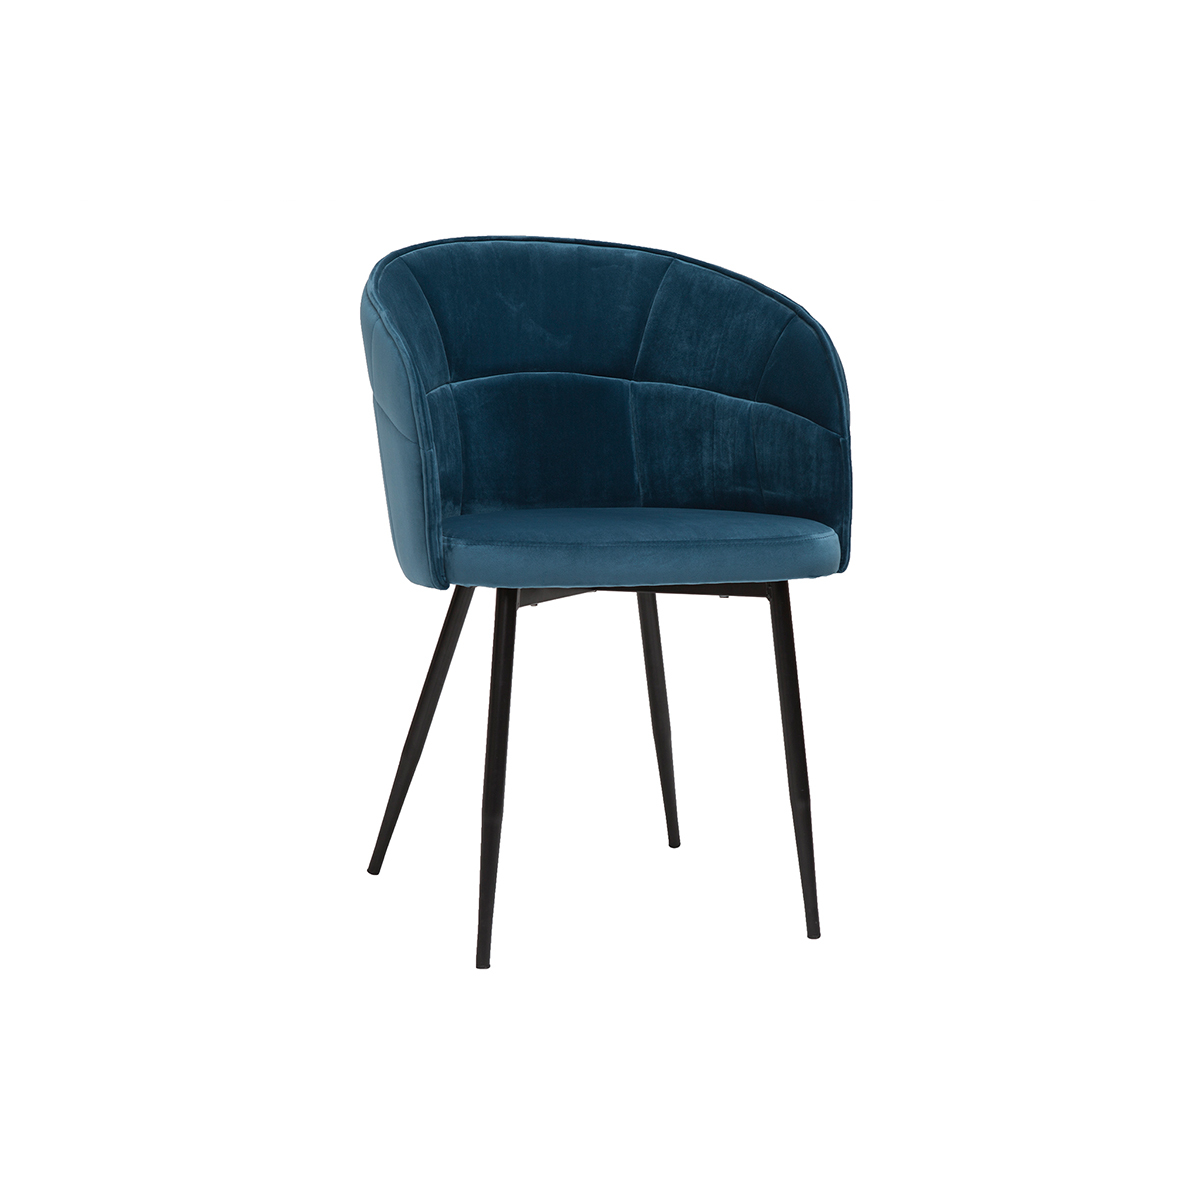 Chaise design en tissu velours bleu pétrole et métal noir JOLLY vue1